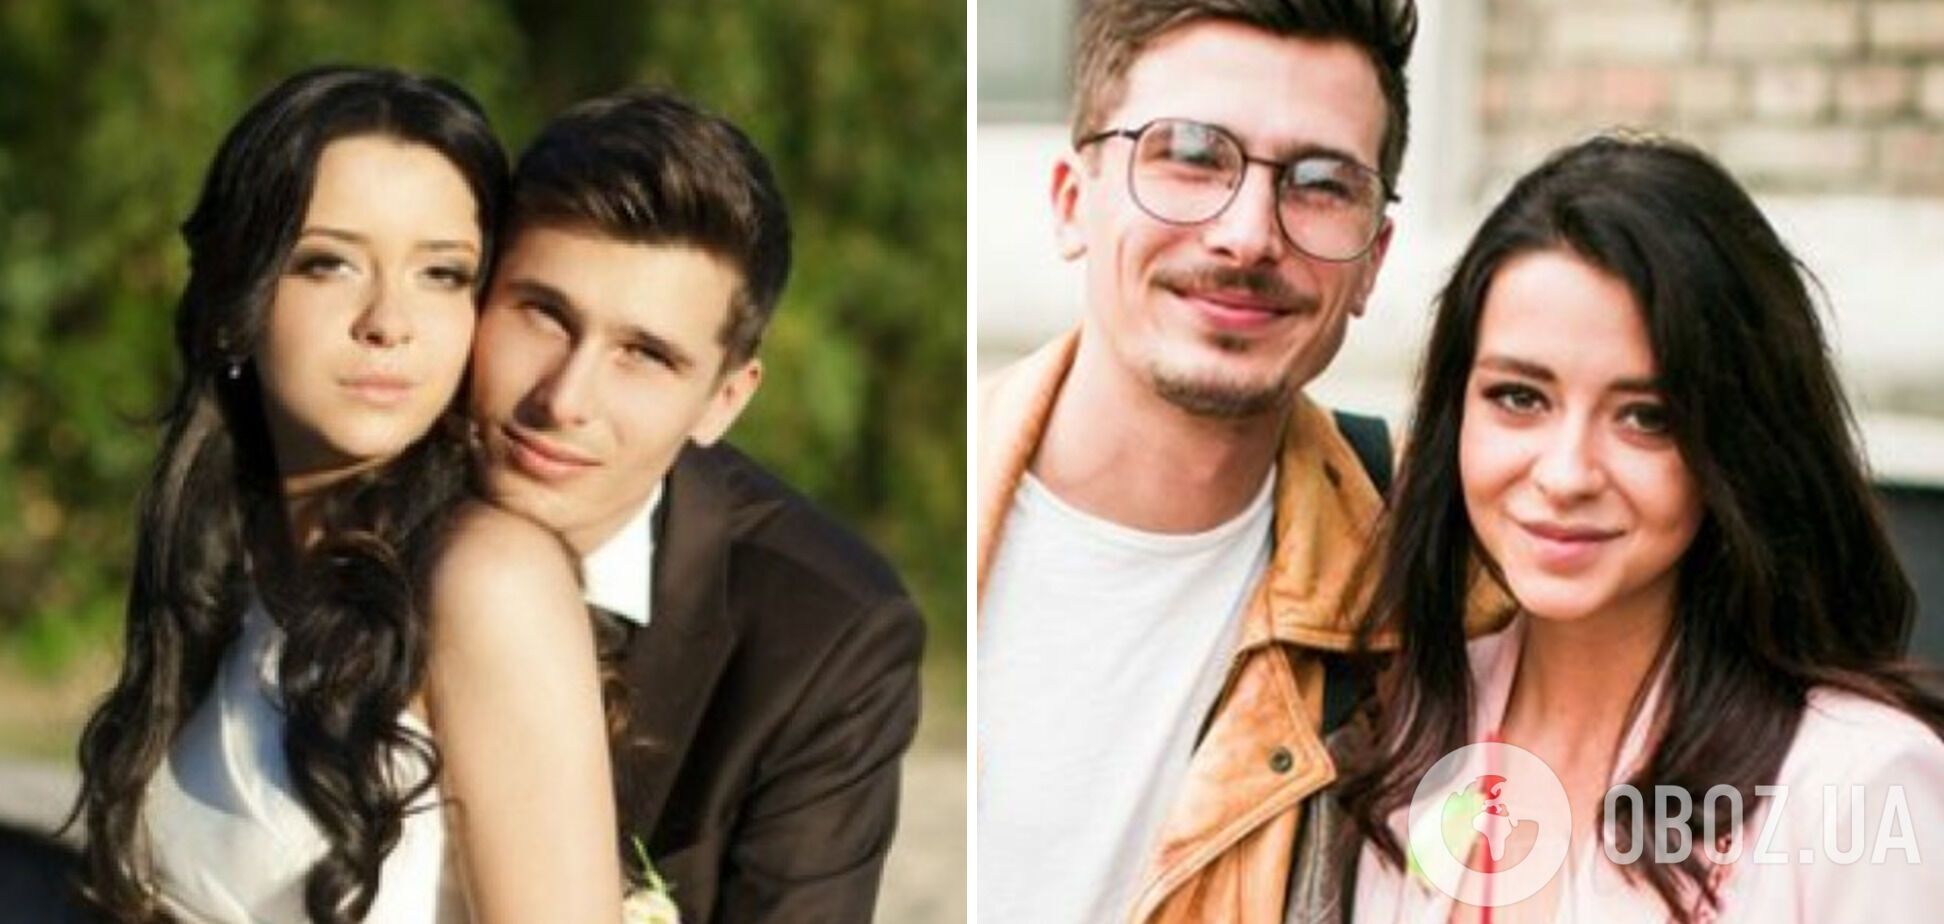 Олексій та Анна одружилися в 2013 році